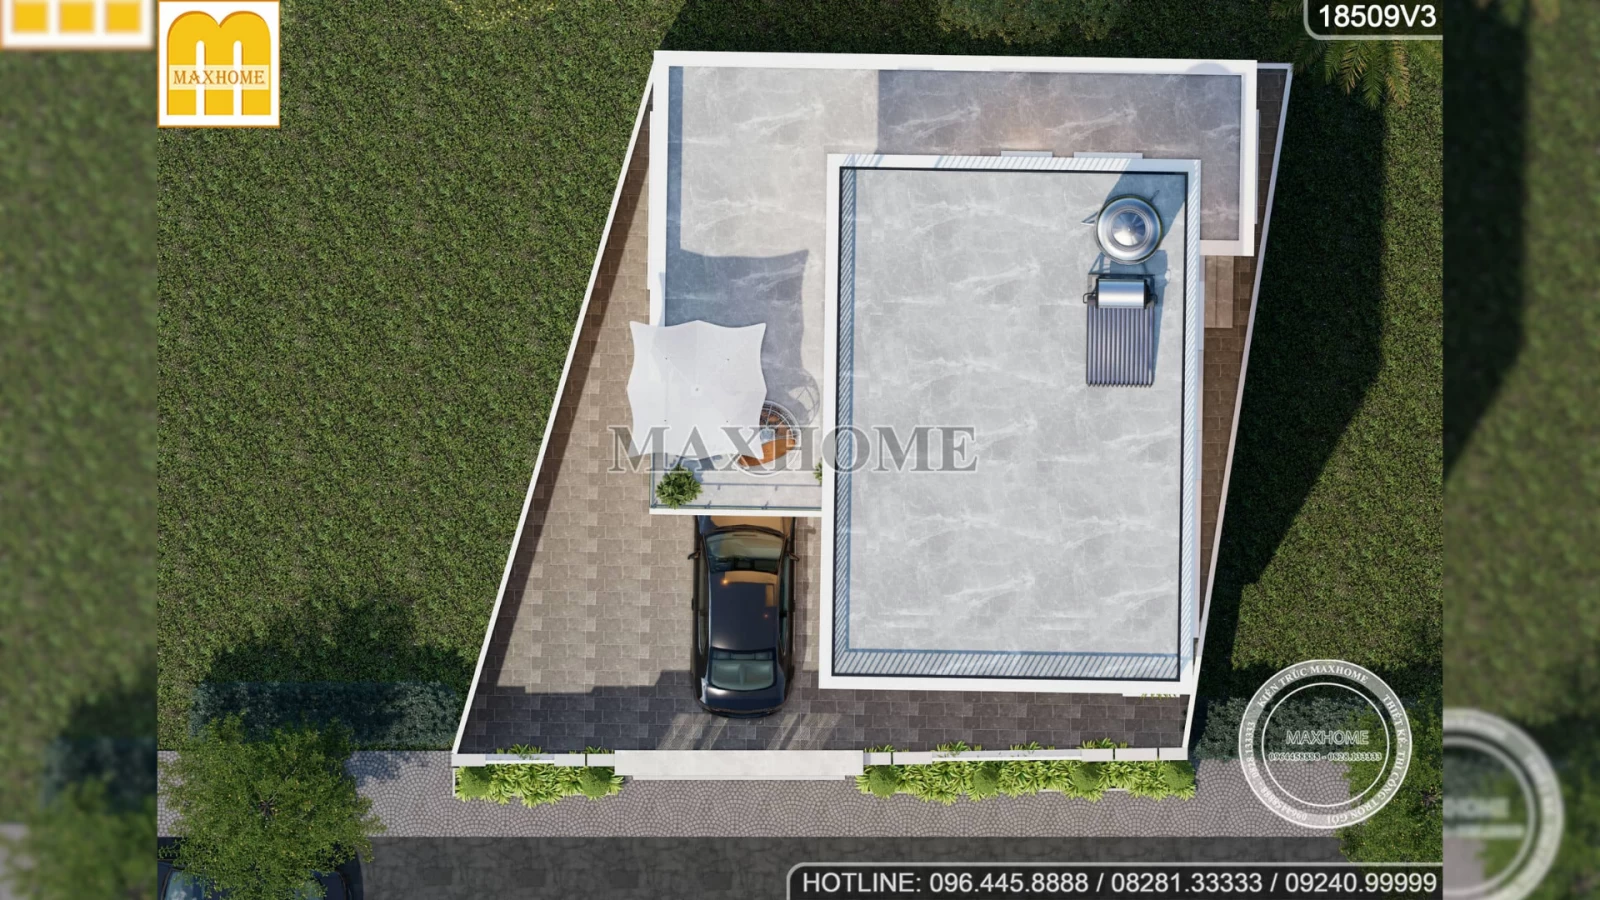 SIÊU PHẨM nhà 2 tầng 1 tum mái bằng do Maxhome thiết kế MÊ ĐẮM MỌI ÁNH NHÌN | MH02622